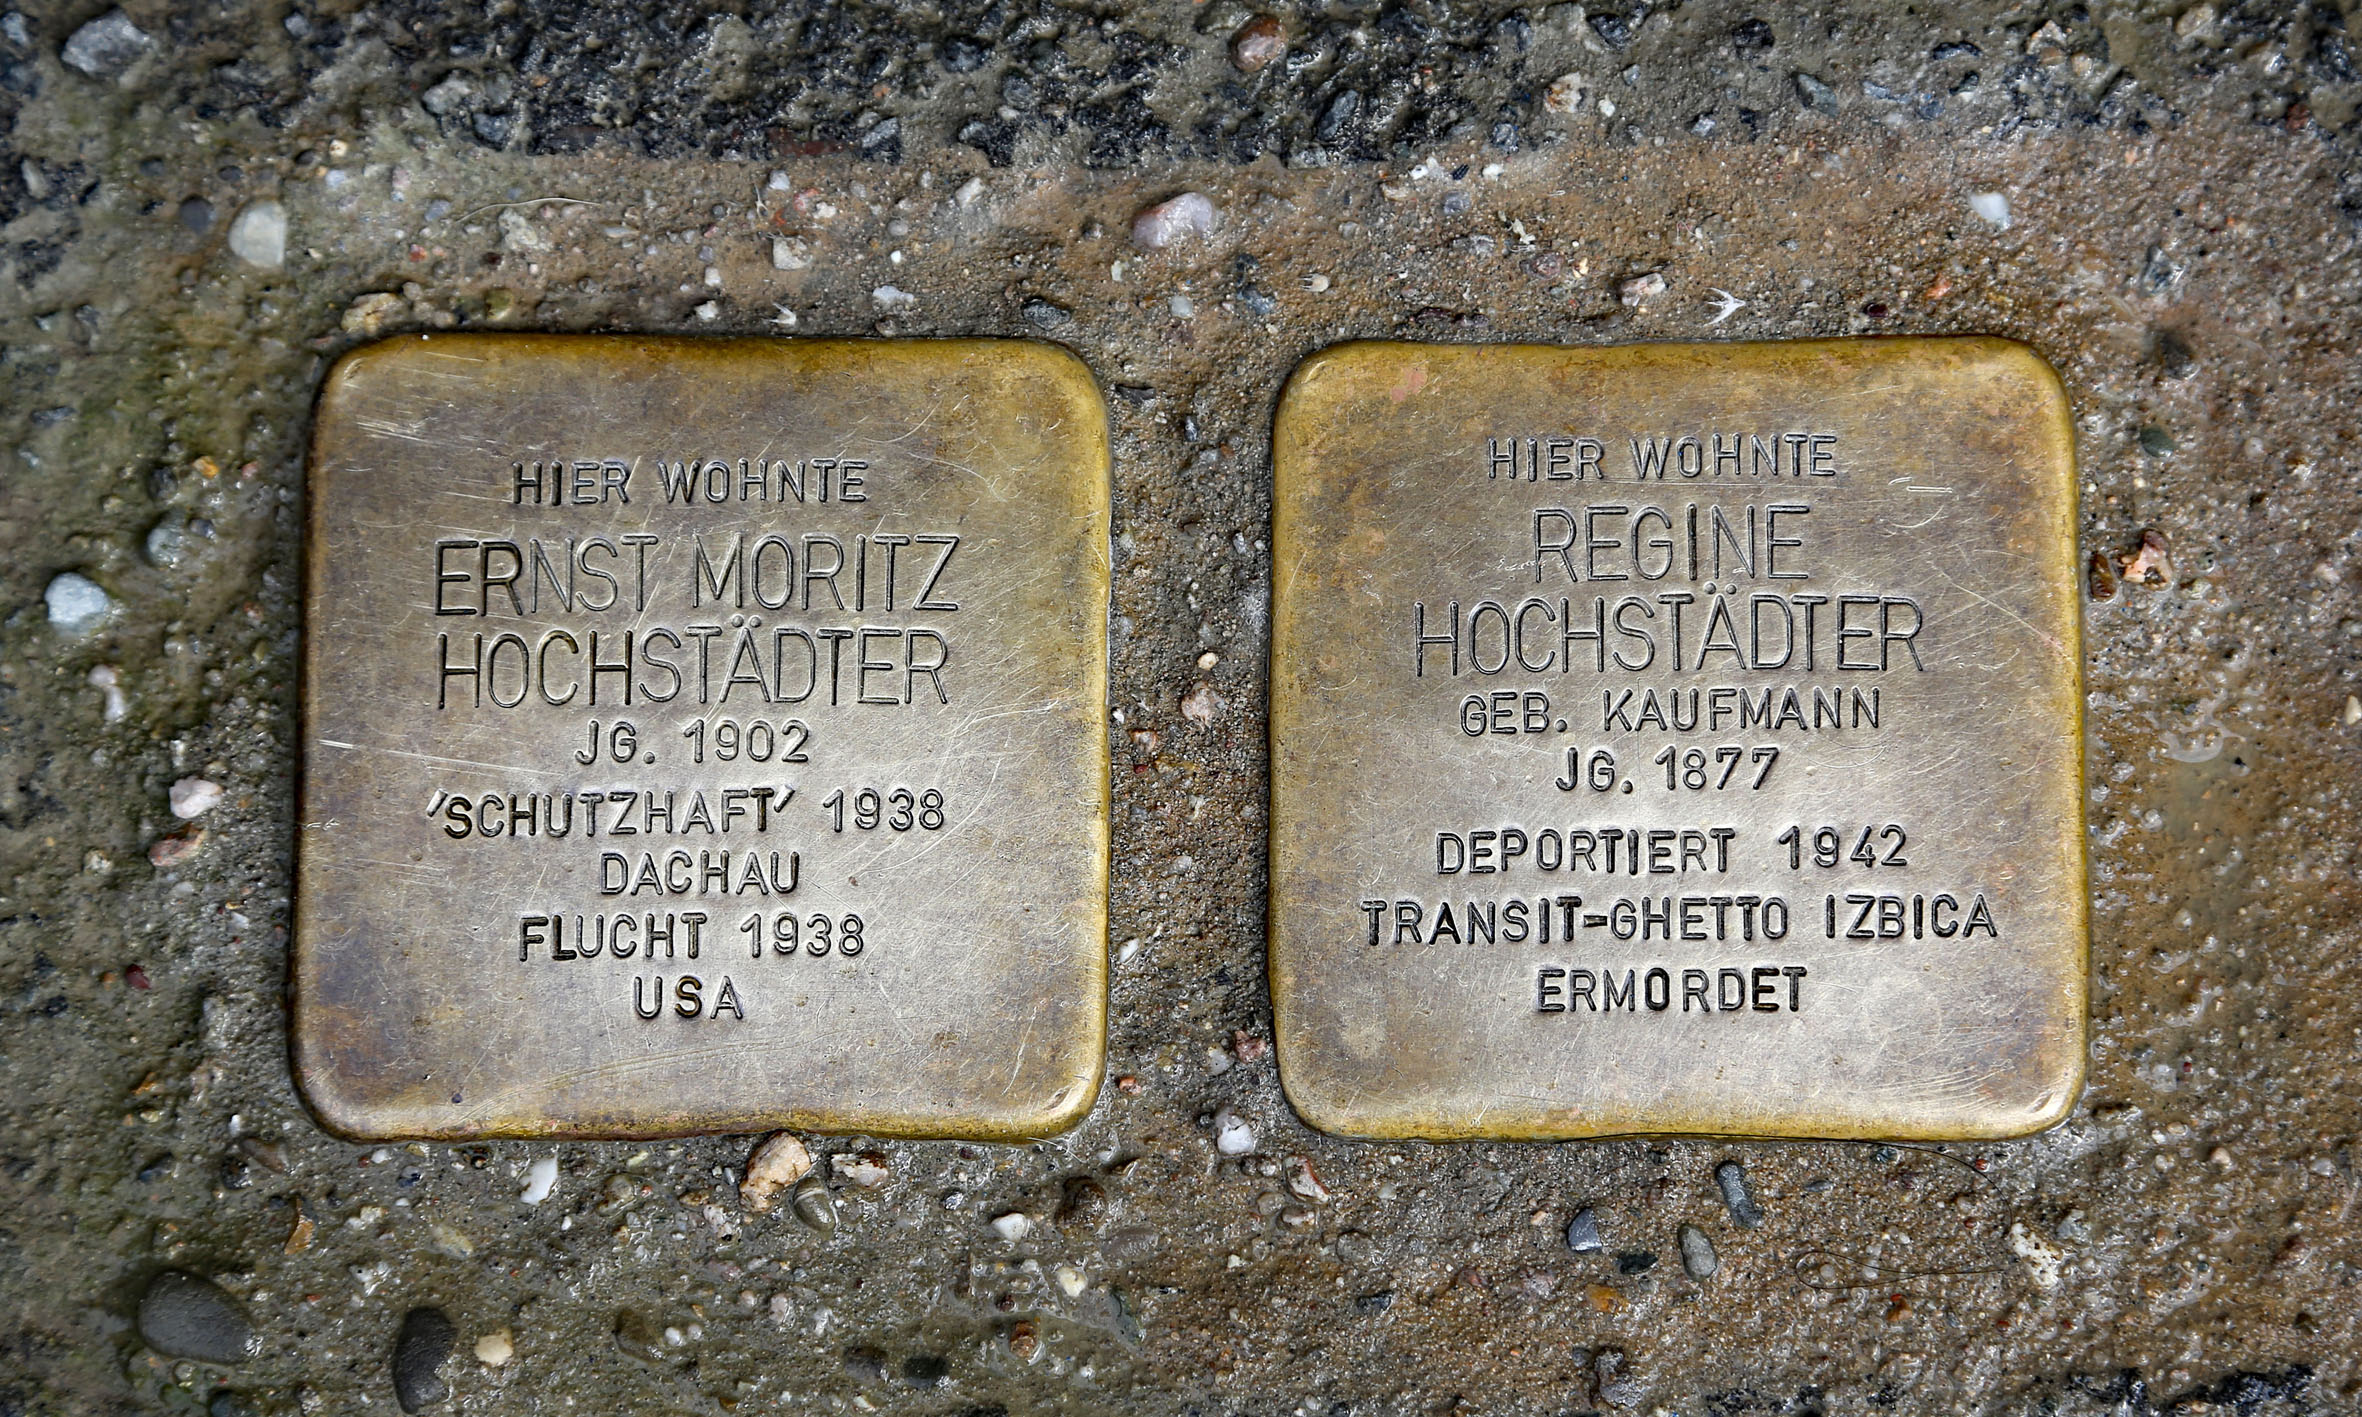 Ernst Moritz und Regine Hochstädter